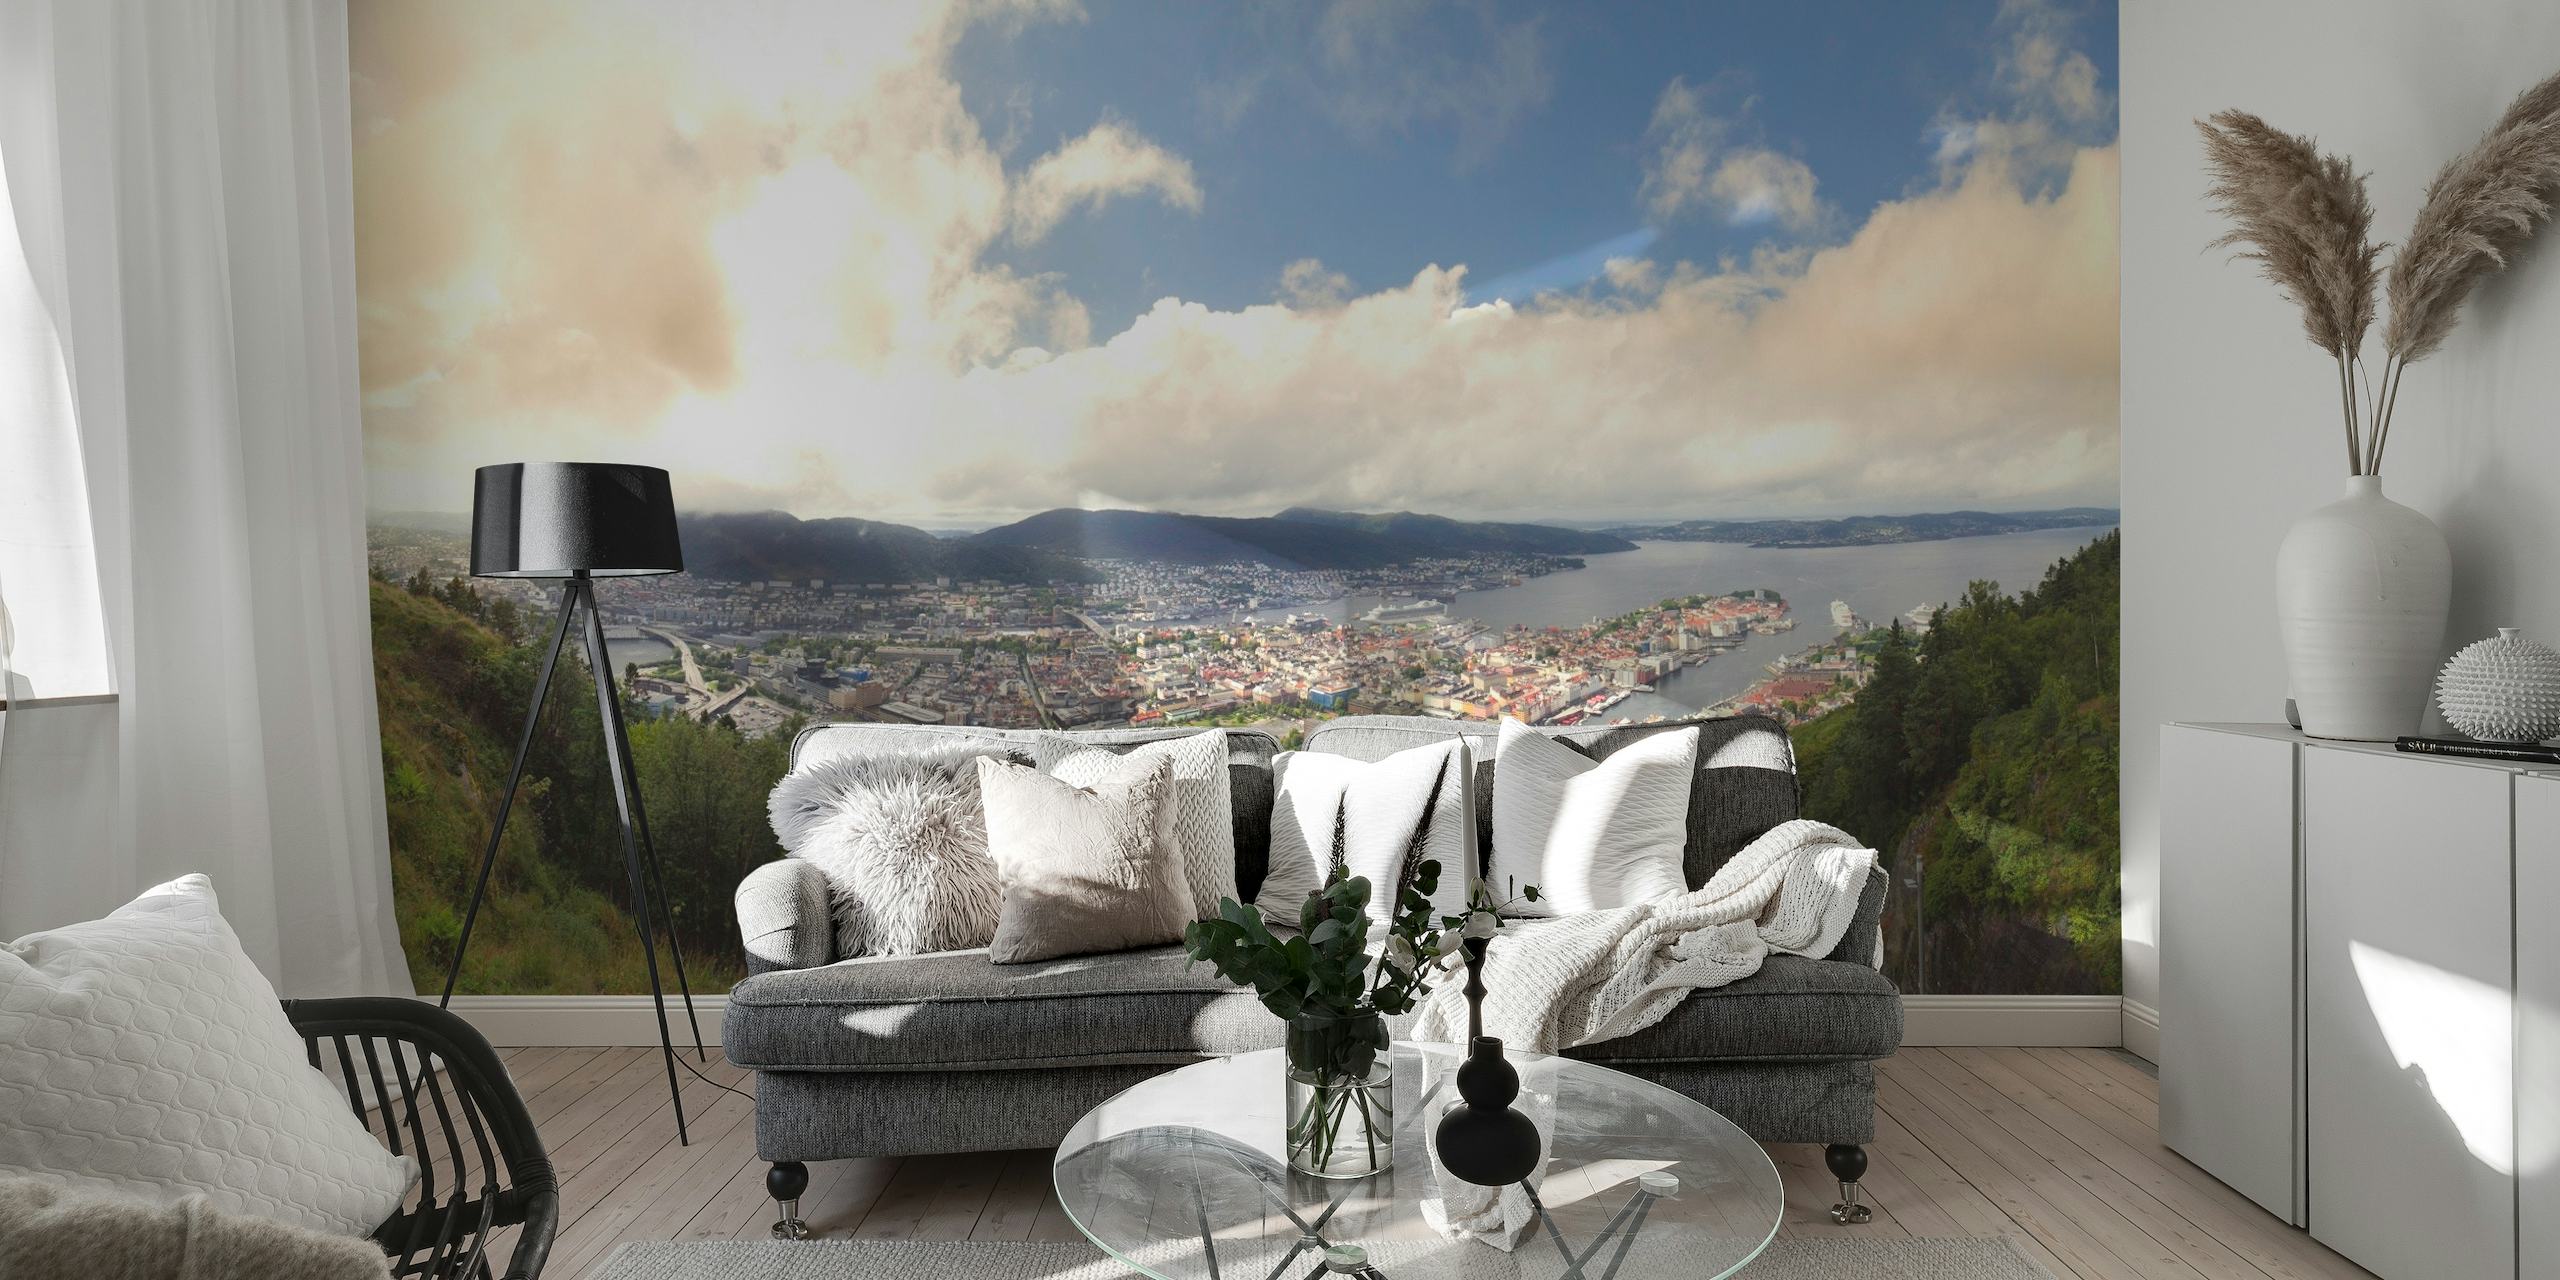 Fototapeta s panoramatickým výhledem na město Bergen obklopené horami a zelení